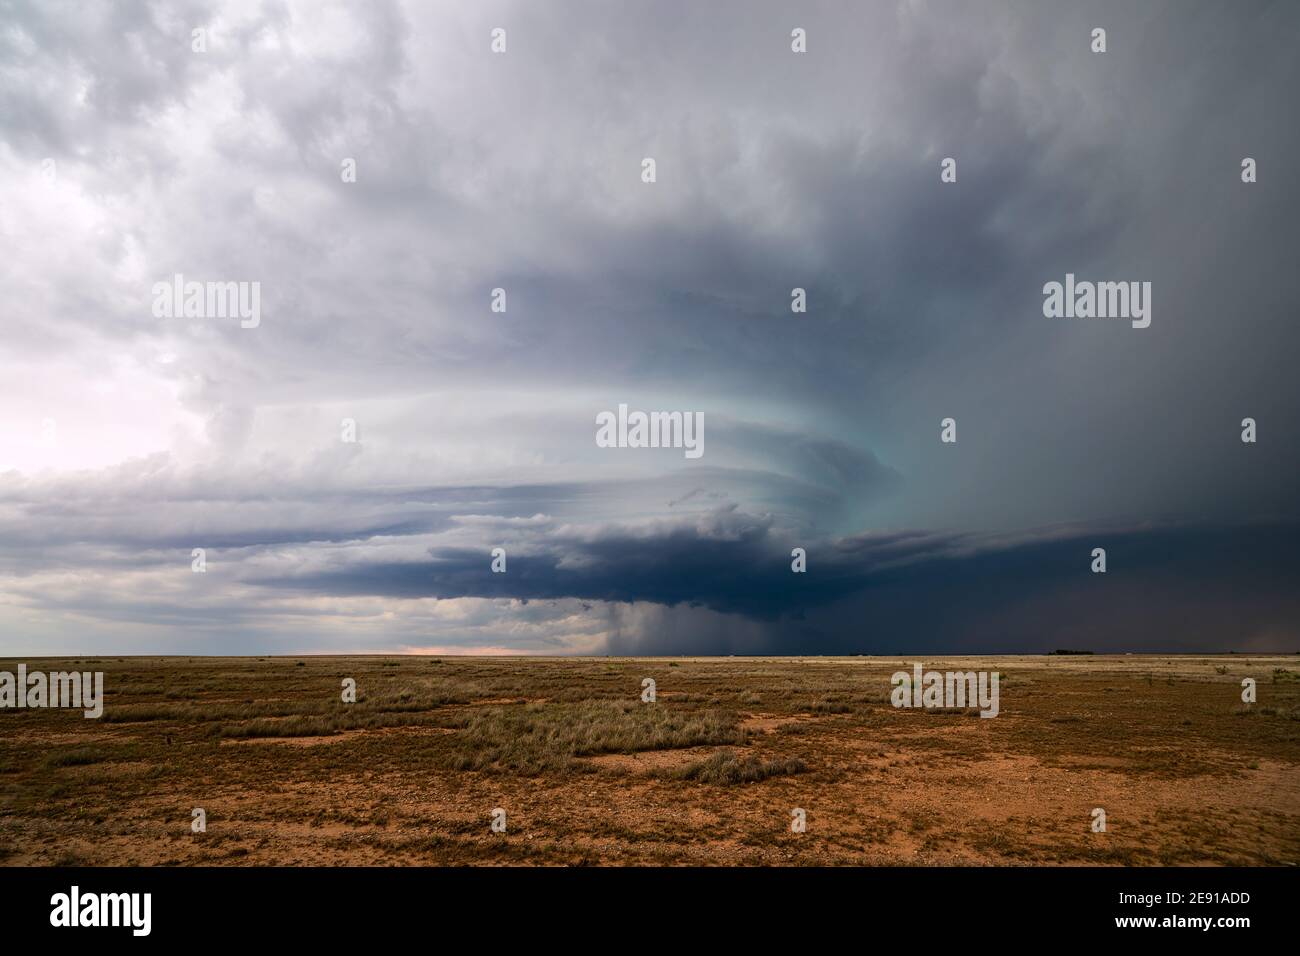 Ciel spectaculaire avec un orage supercellulaire nuage sur un champ dans les plaines près de Roswell, Nouveau-Mexique Banque D'Images